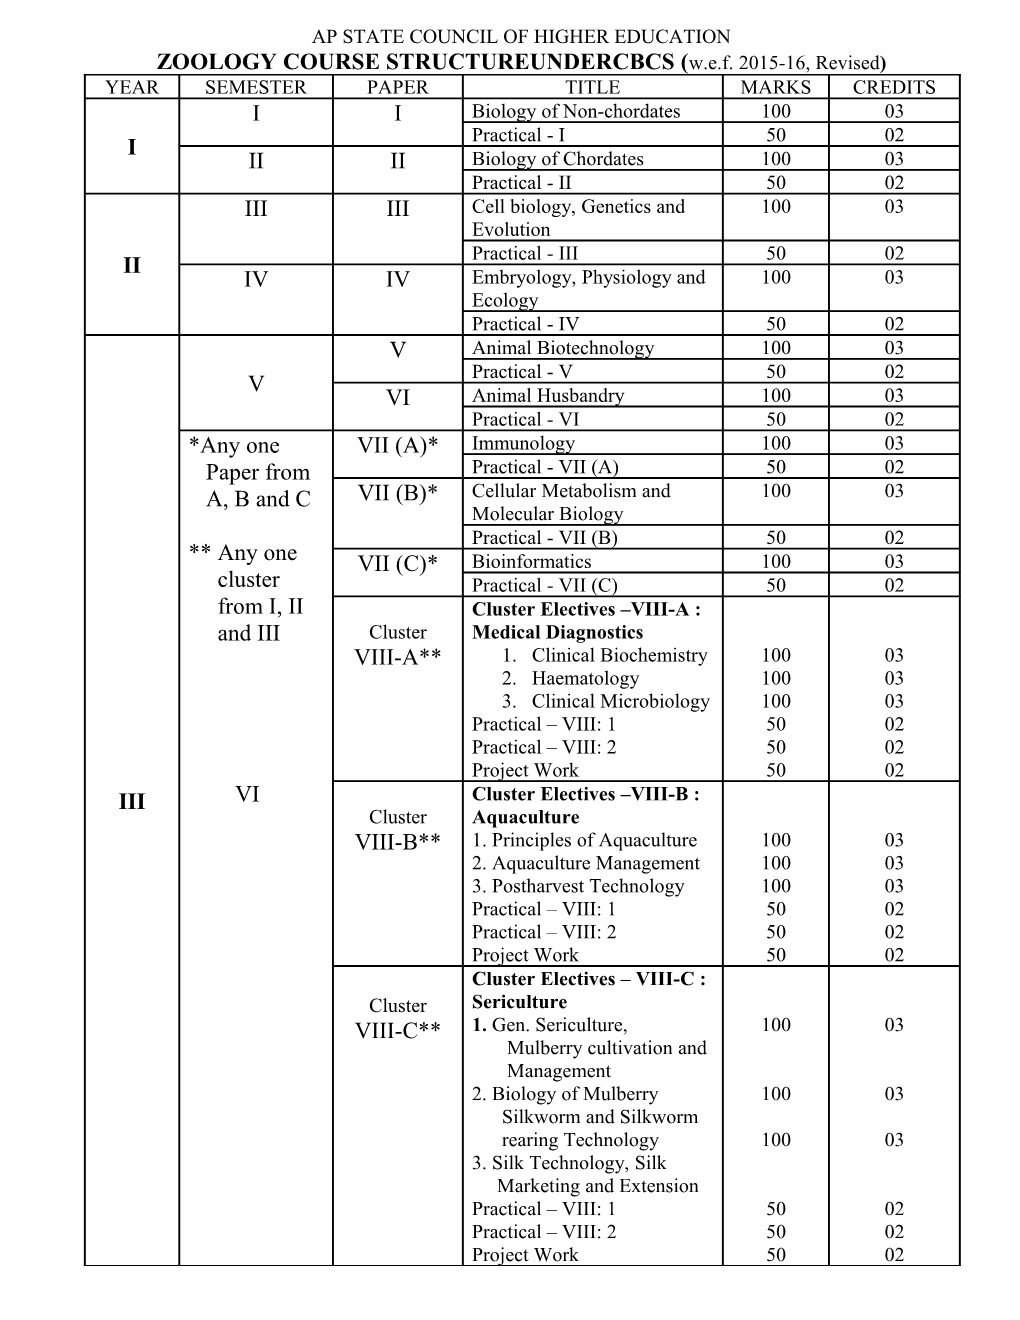 Zoology Course Structureundercbcs (W.E.F. 2015-16, Revised)